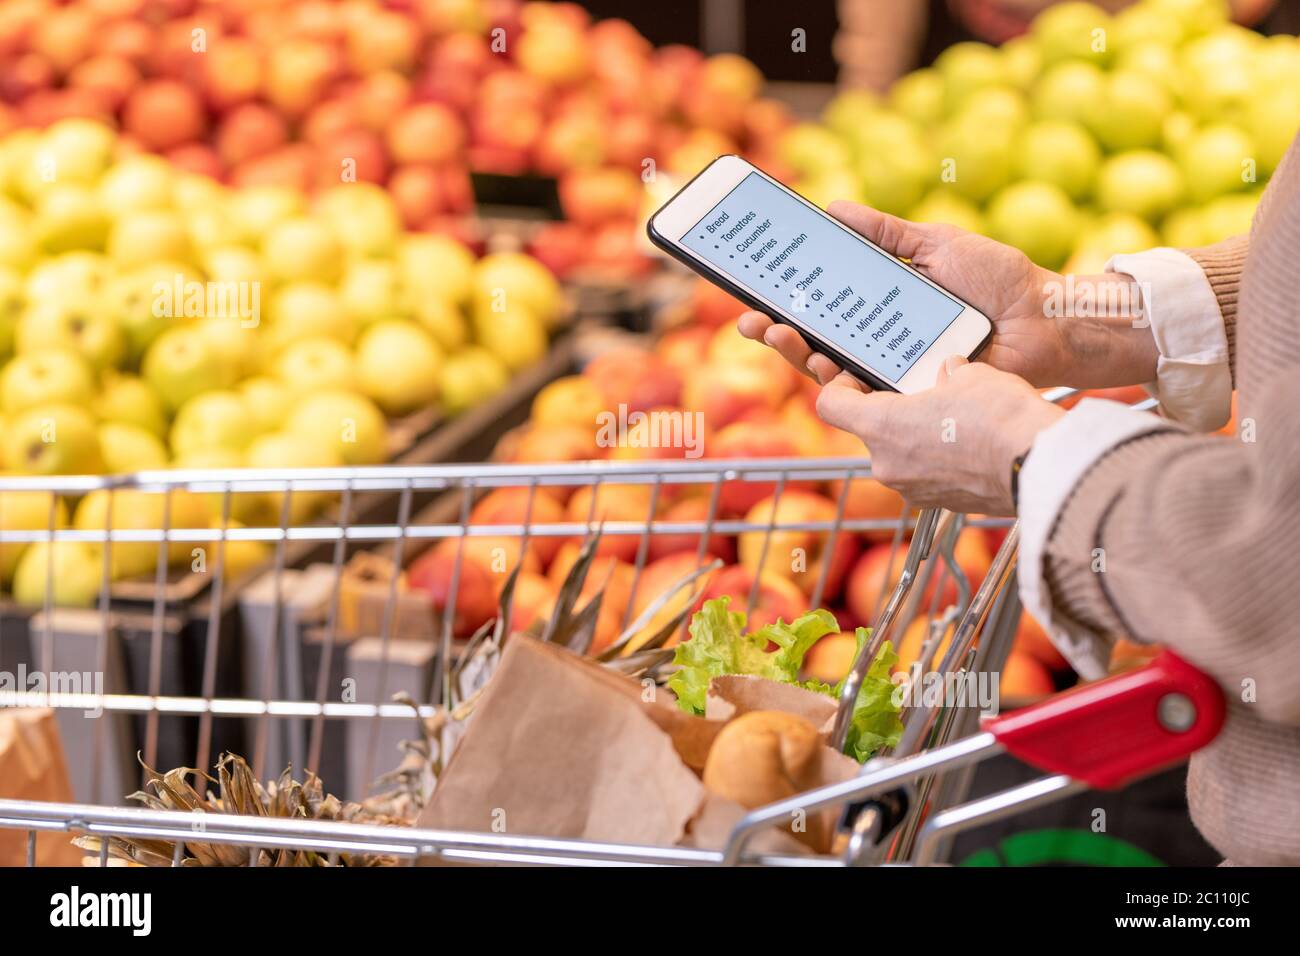 Hände von modernen reifen weiblichen Kunden mit Smartphone über Lebensmittel im Warenkorb Blick durch die Einkaufsliste Stockfoto